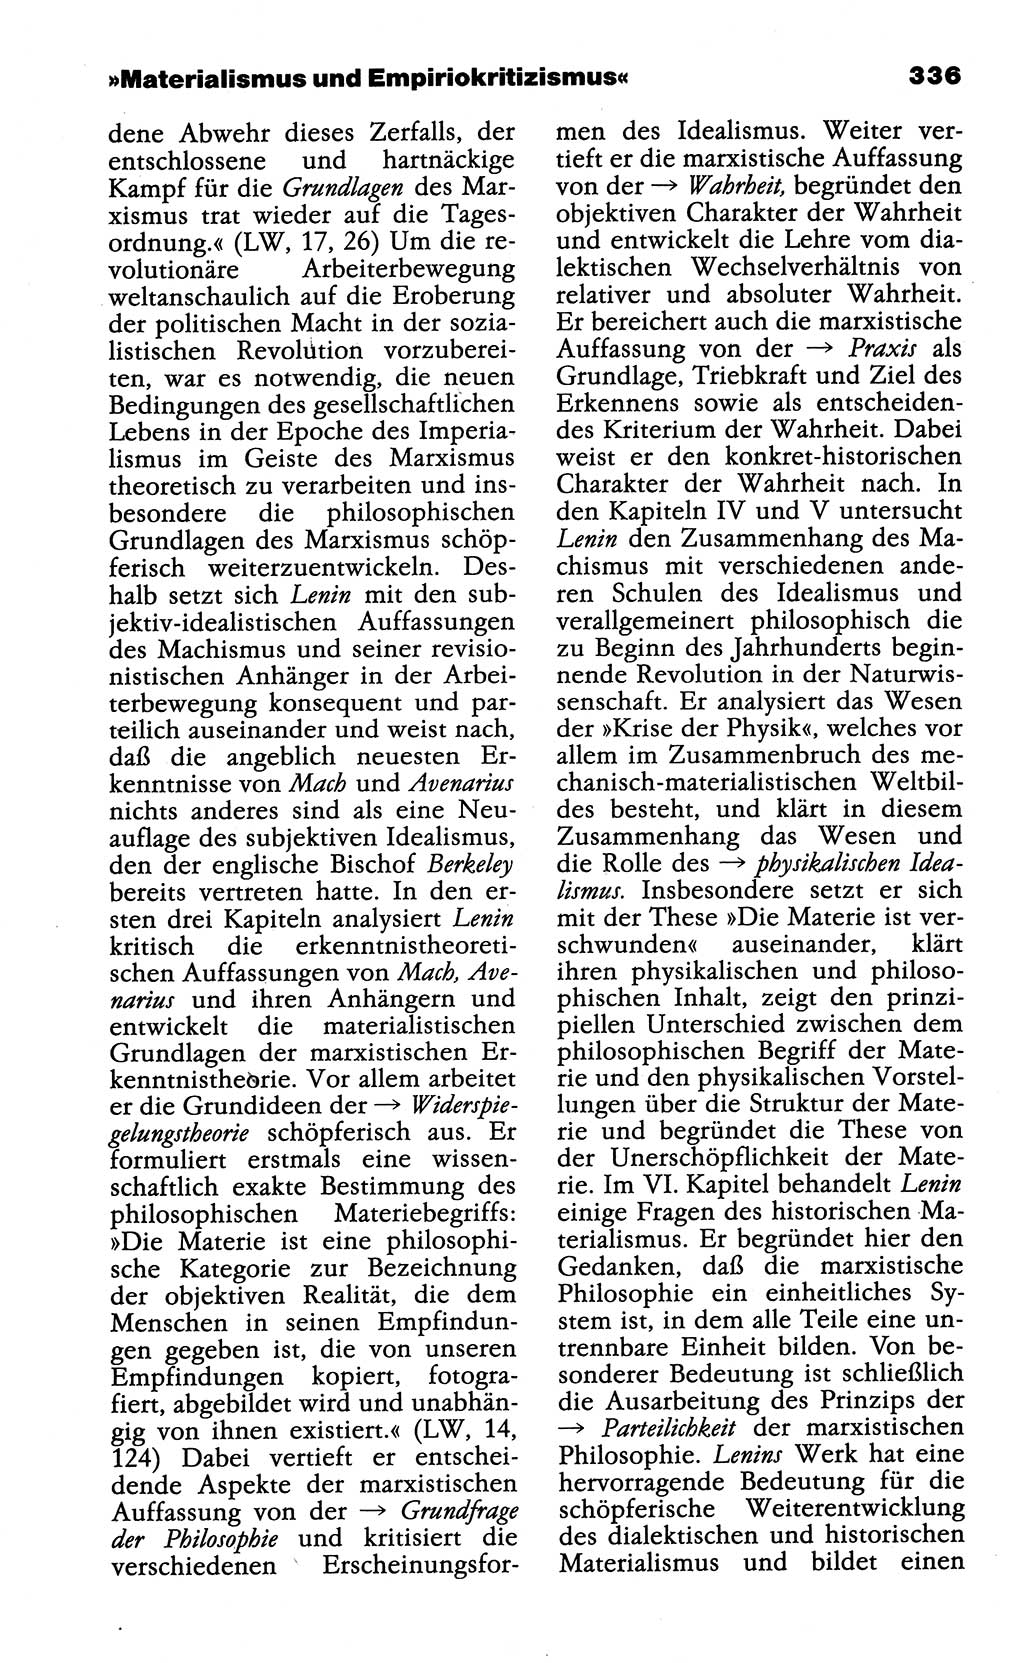 Wörterbuch der marxistisch-leninistischen Philosophie [Deutsche Demokratische Republik (DDR)] 1985, Seite 336 (Wb. ML Phil. DDR 1985, S. 336)